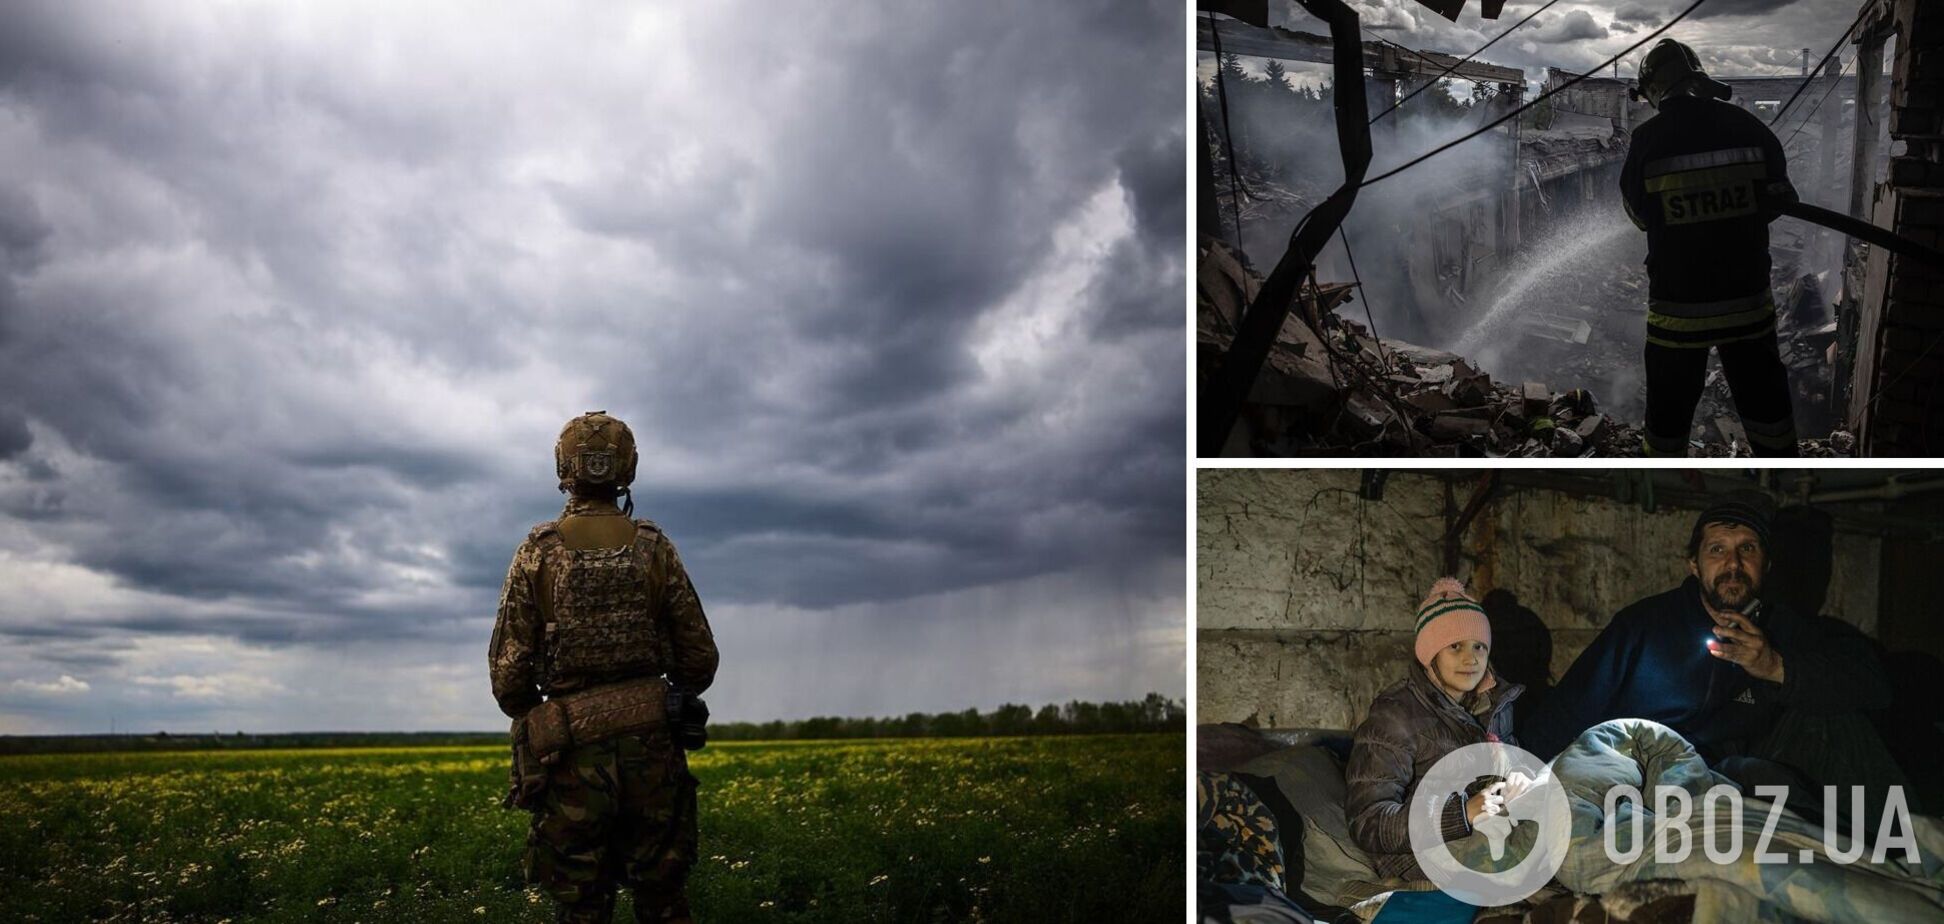 Ворог може здійснити нову атаку: екстрасенс дала прогноз для України на літо